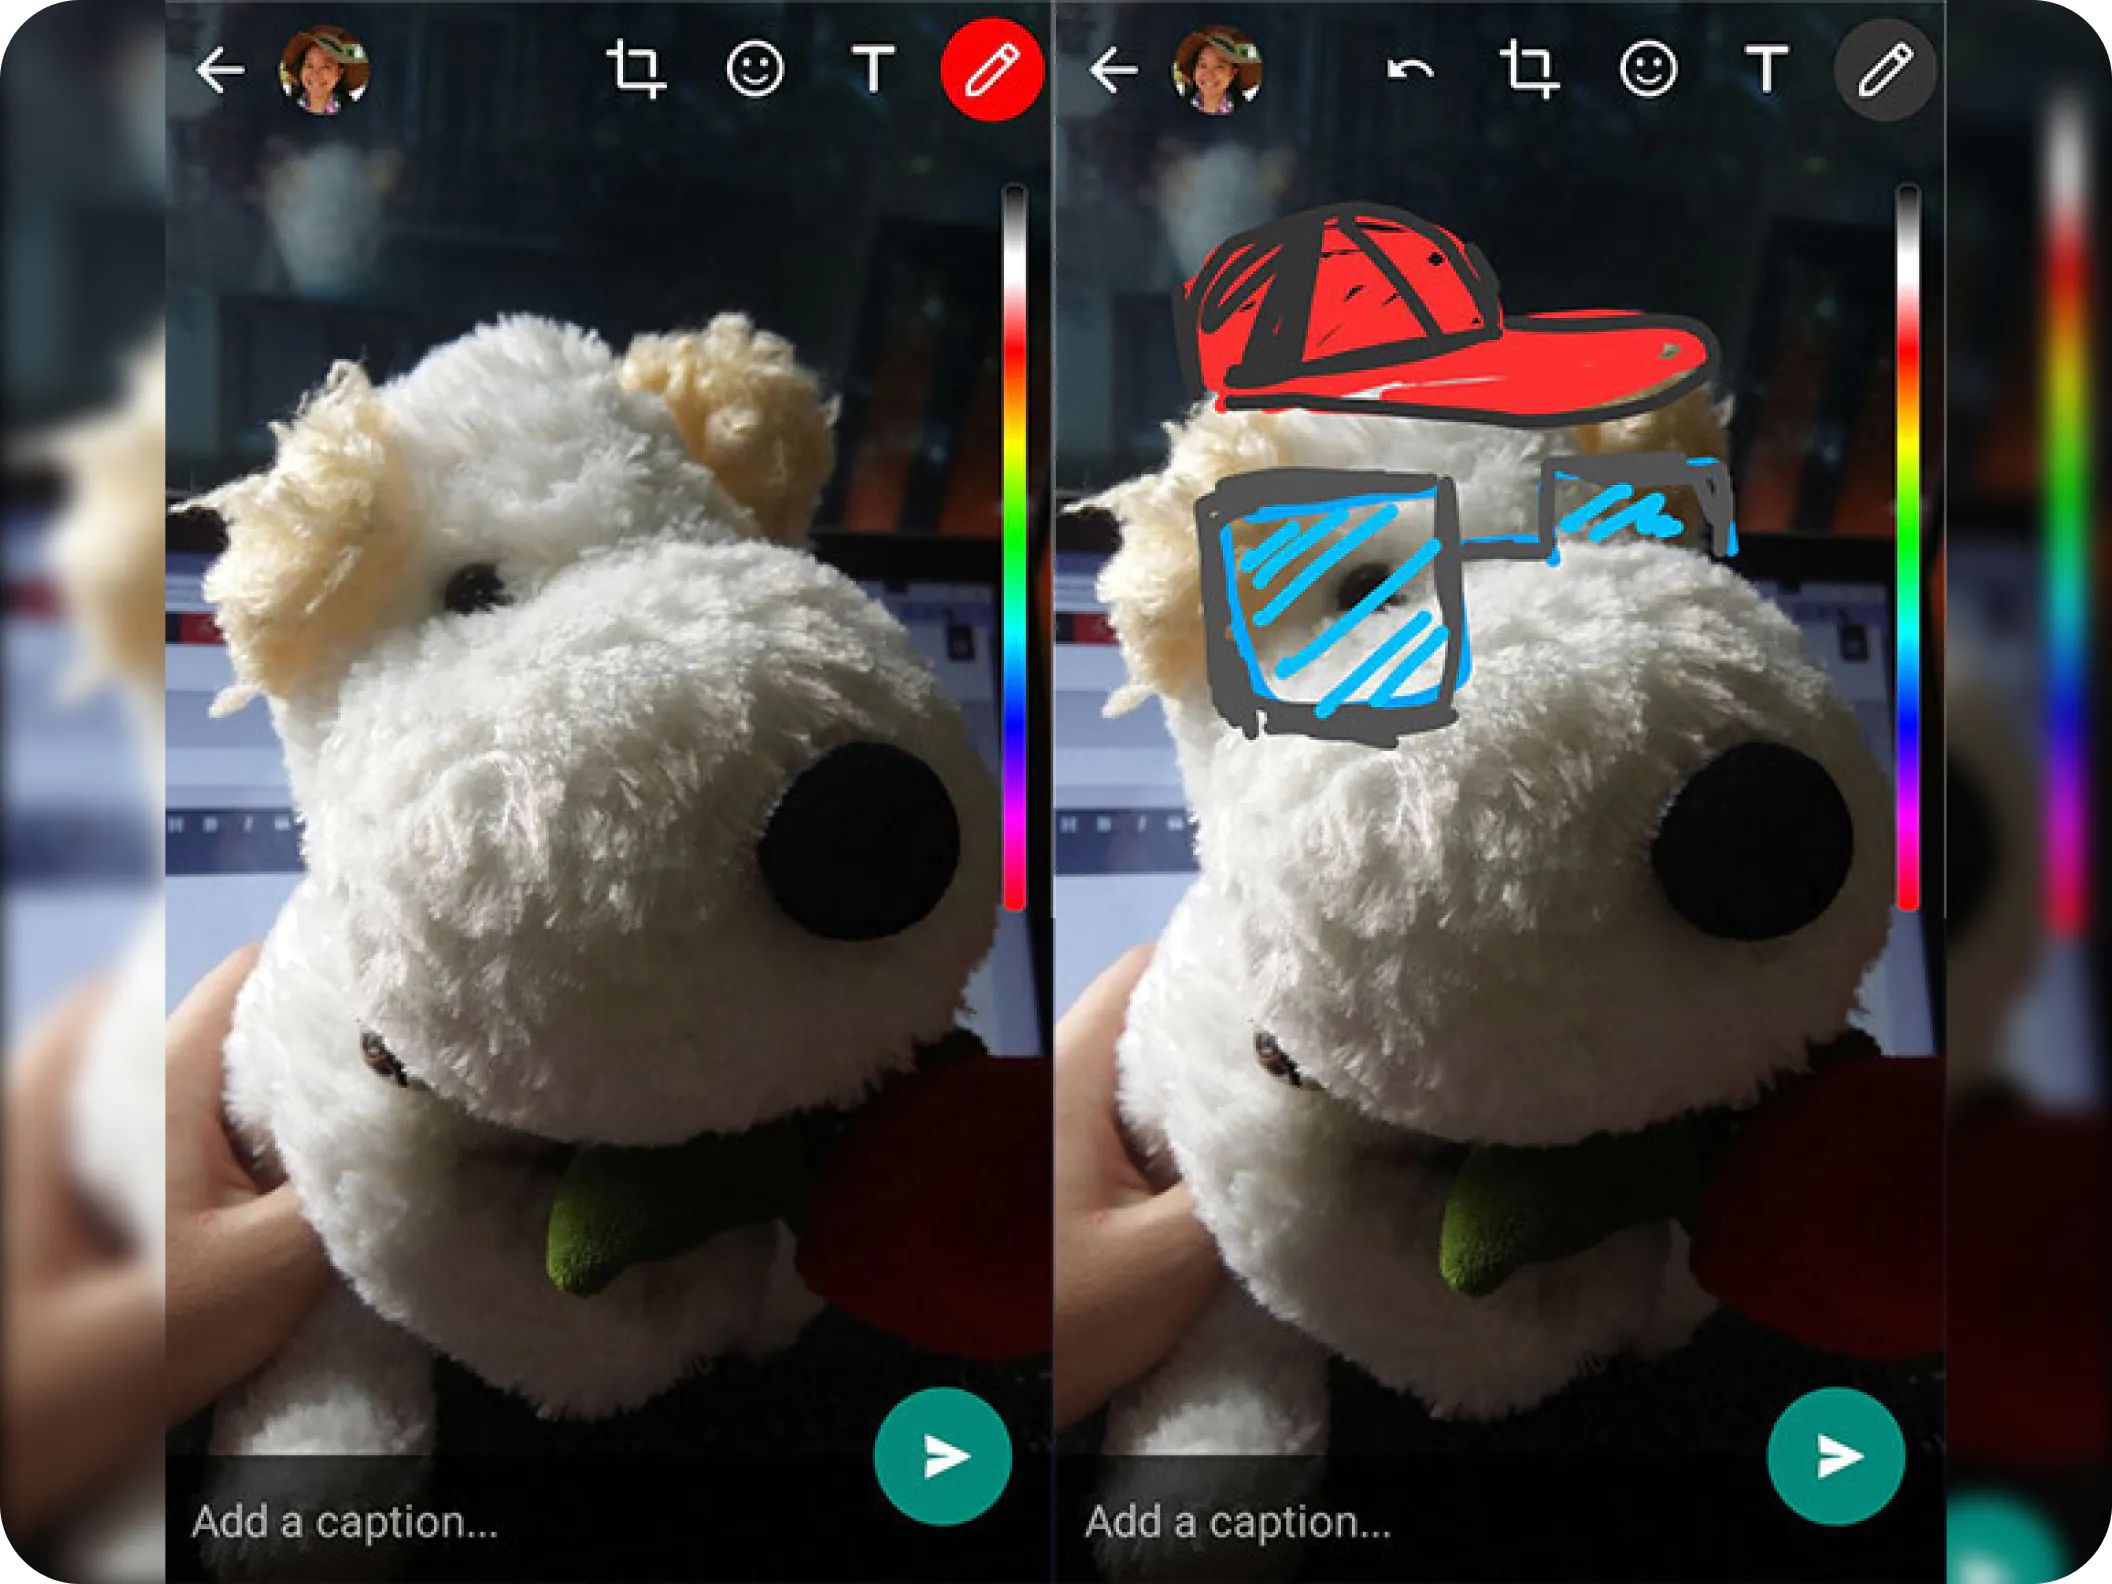 Capturas de la app de WhatsApp mientras se enseña como editar una imagen